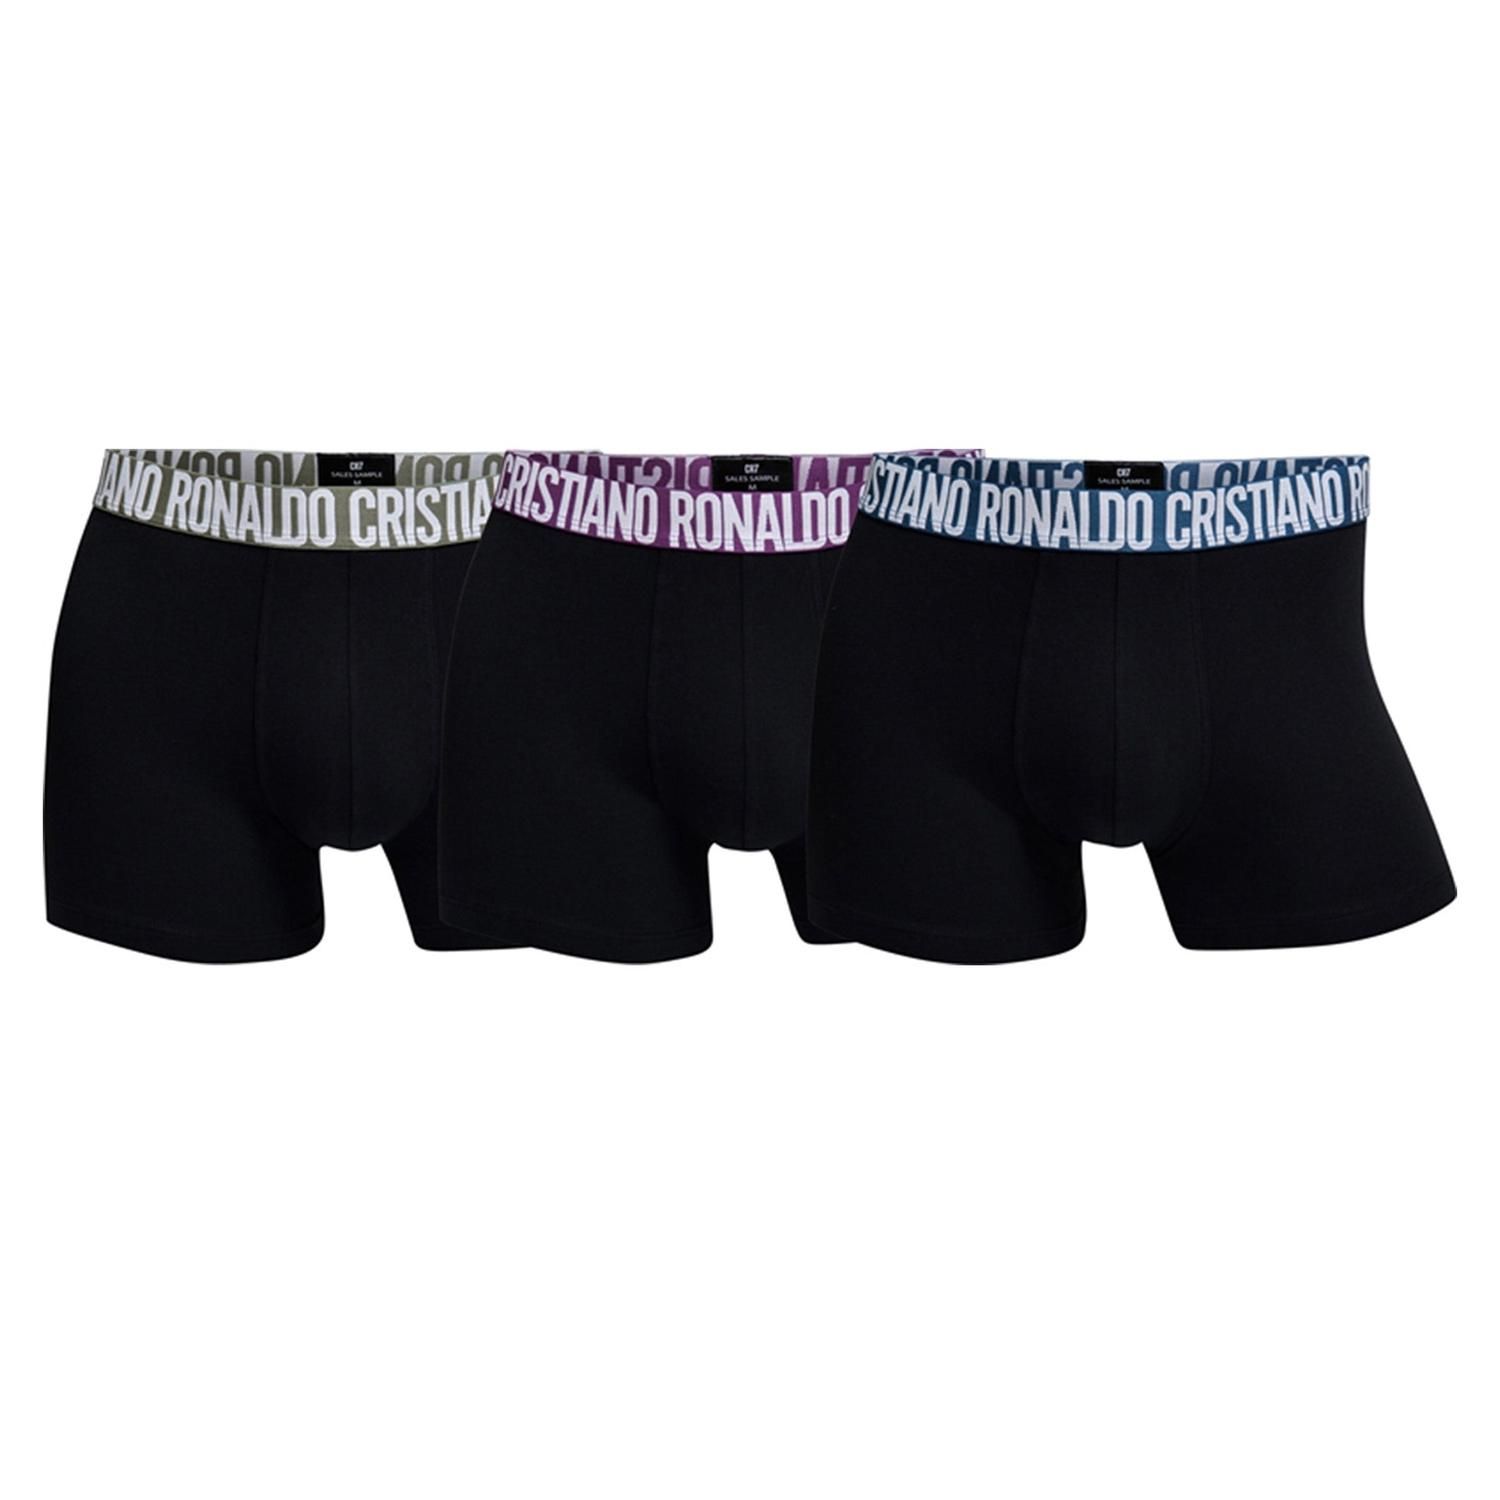 Gender:ManType:Boxer shortsBox:tri-packMaterial:cotton 95%elastane 5%Washing:wash at 40° C